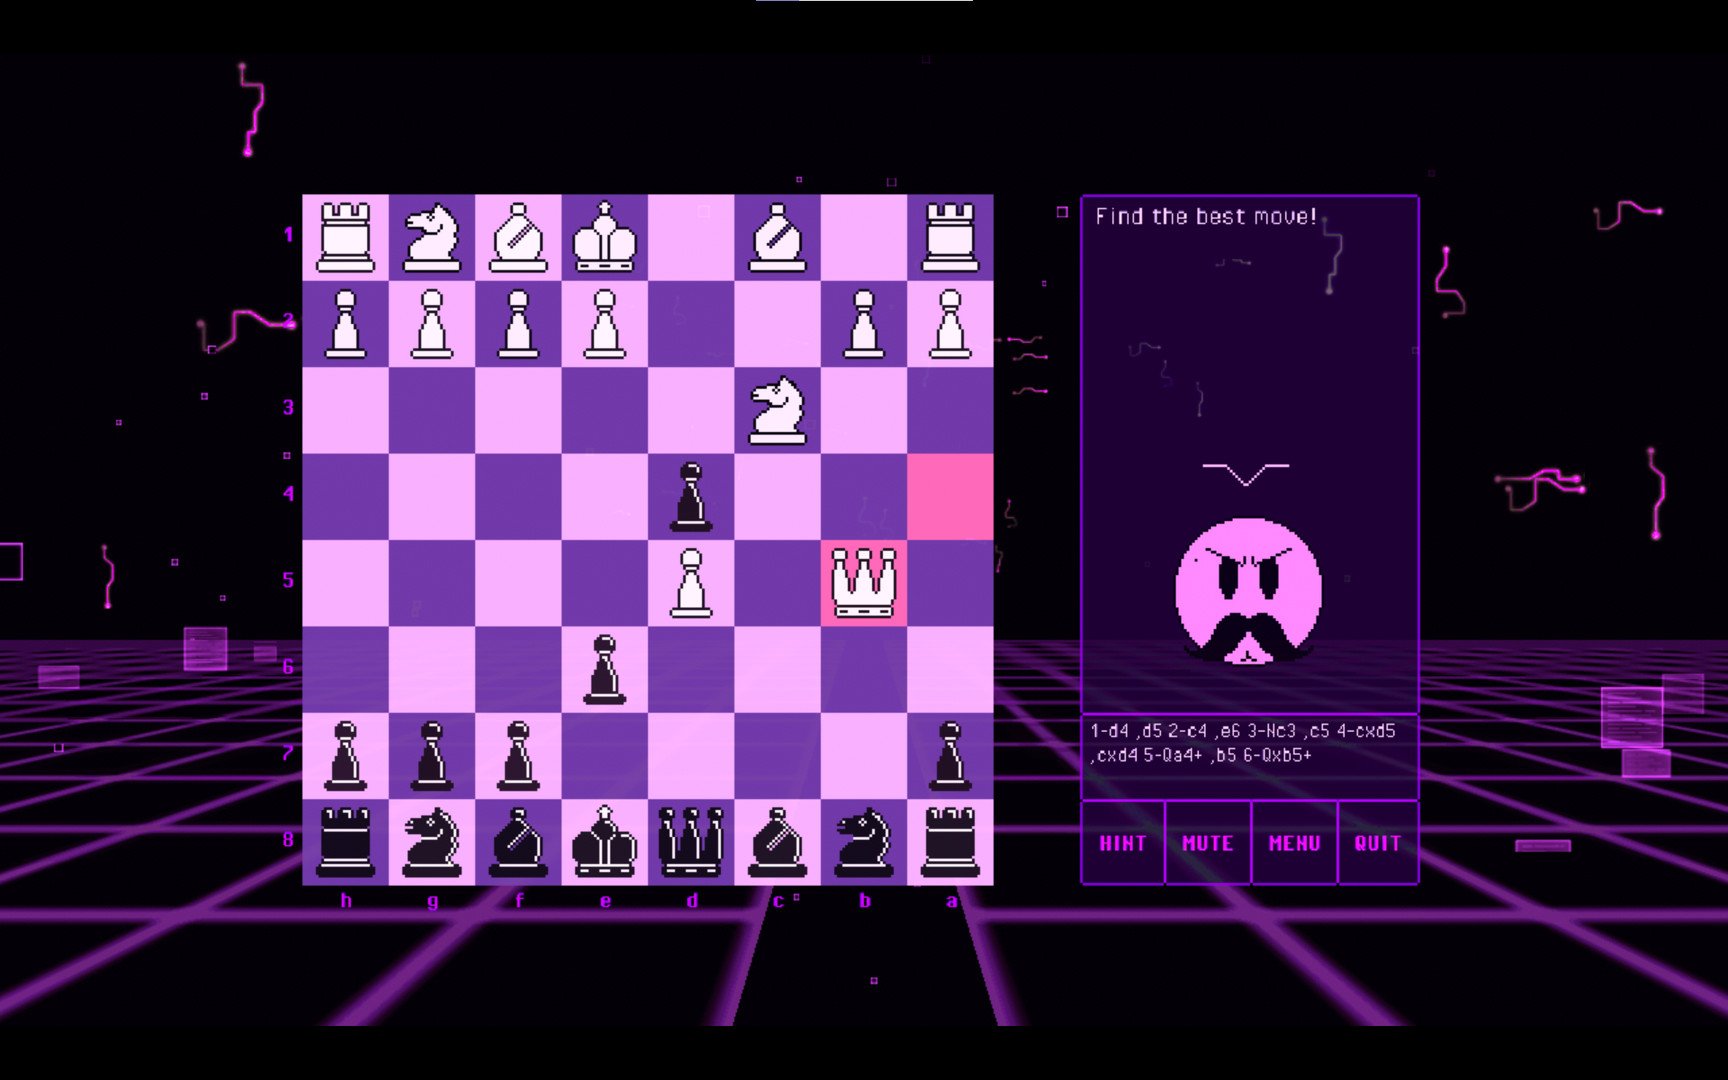 BOT.vinnik Chess Opening Traps 3